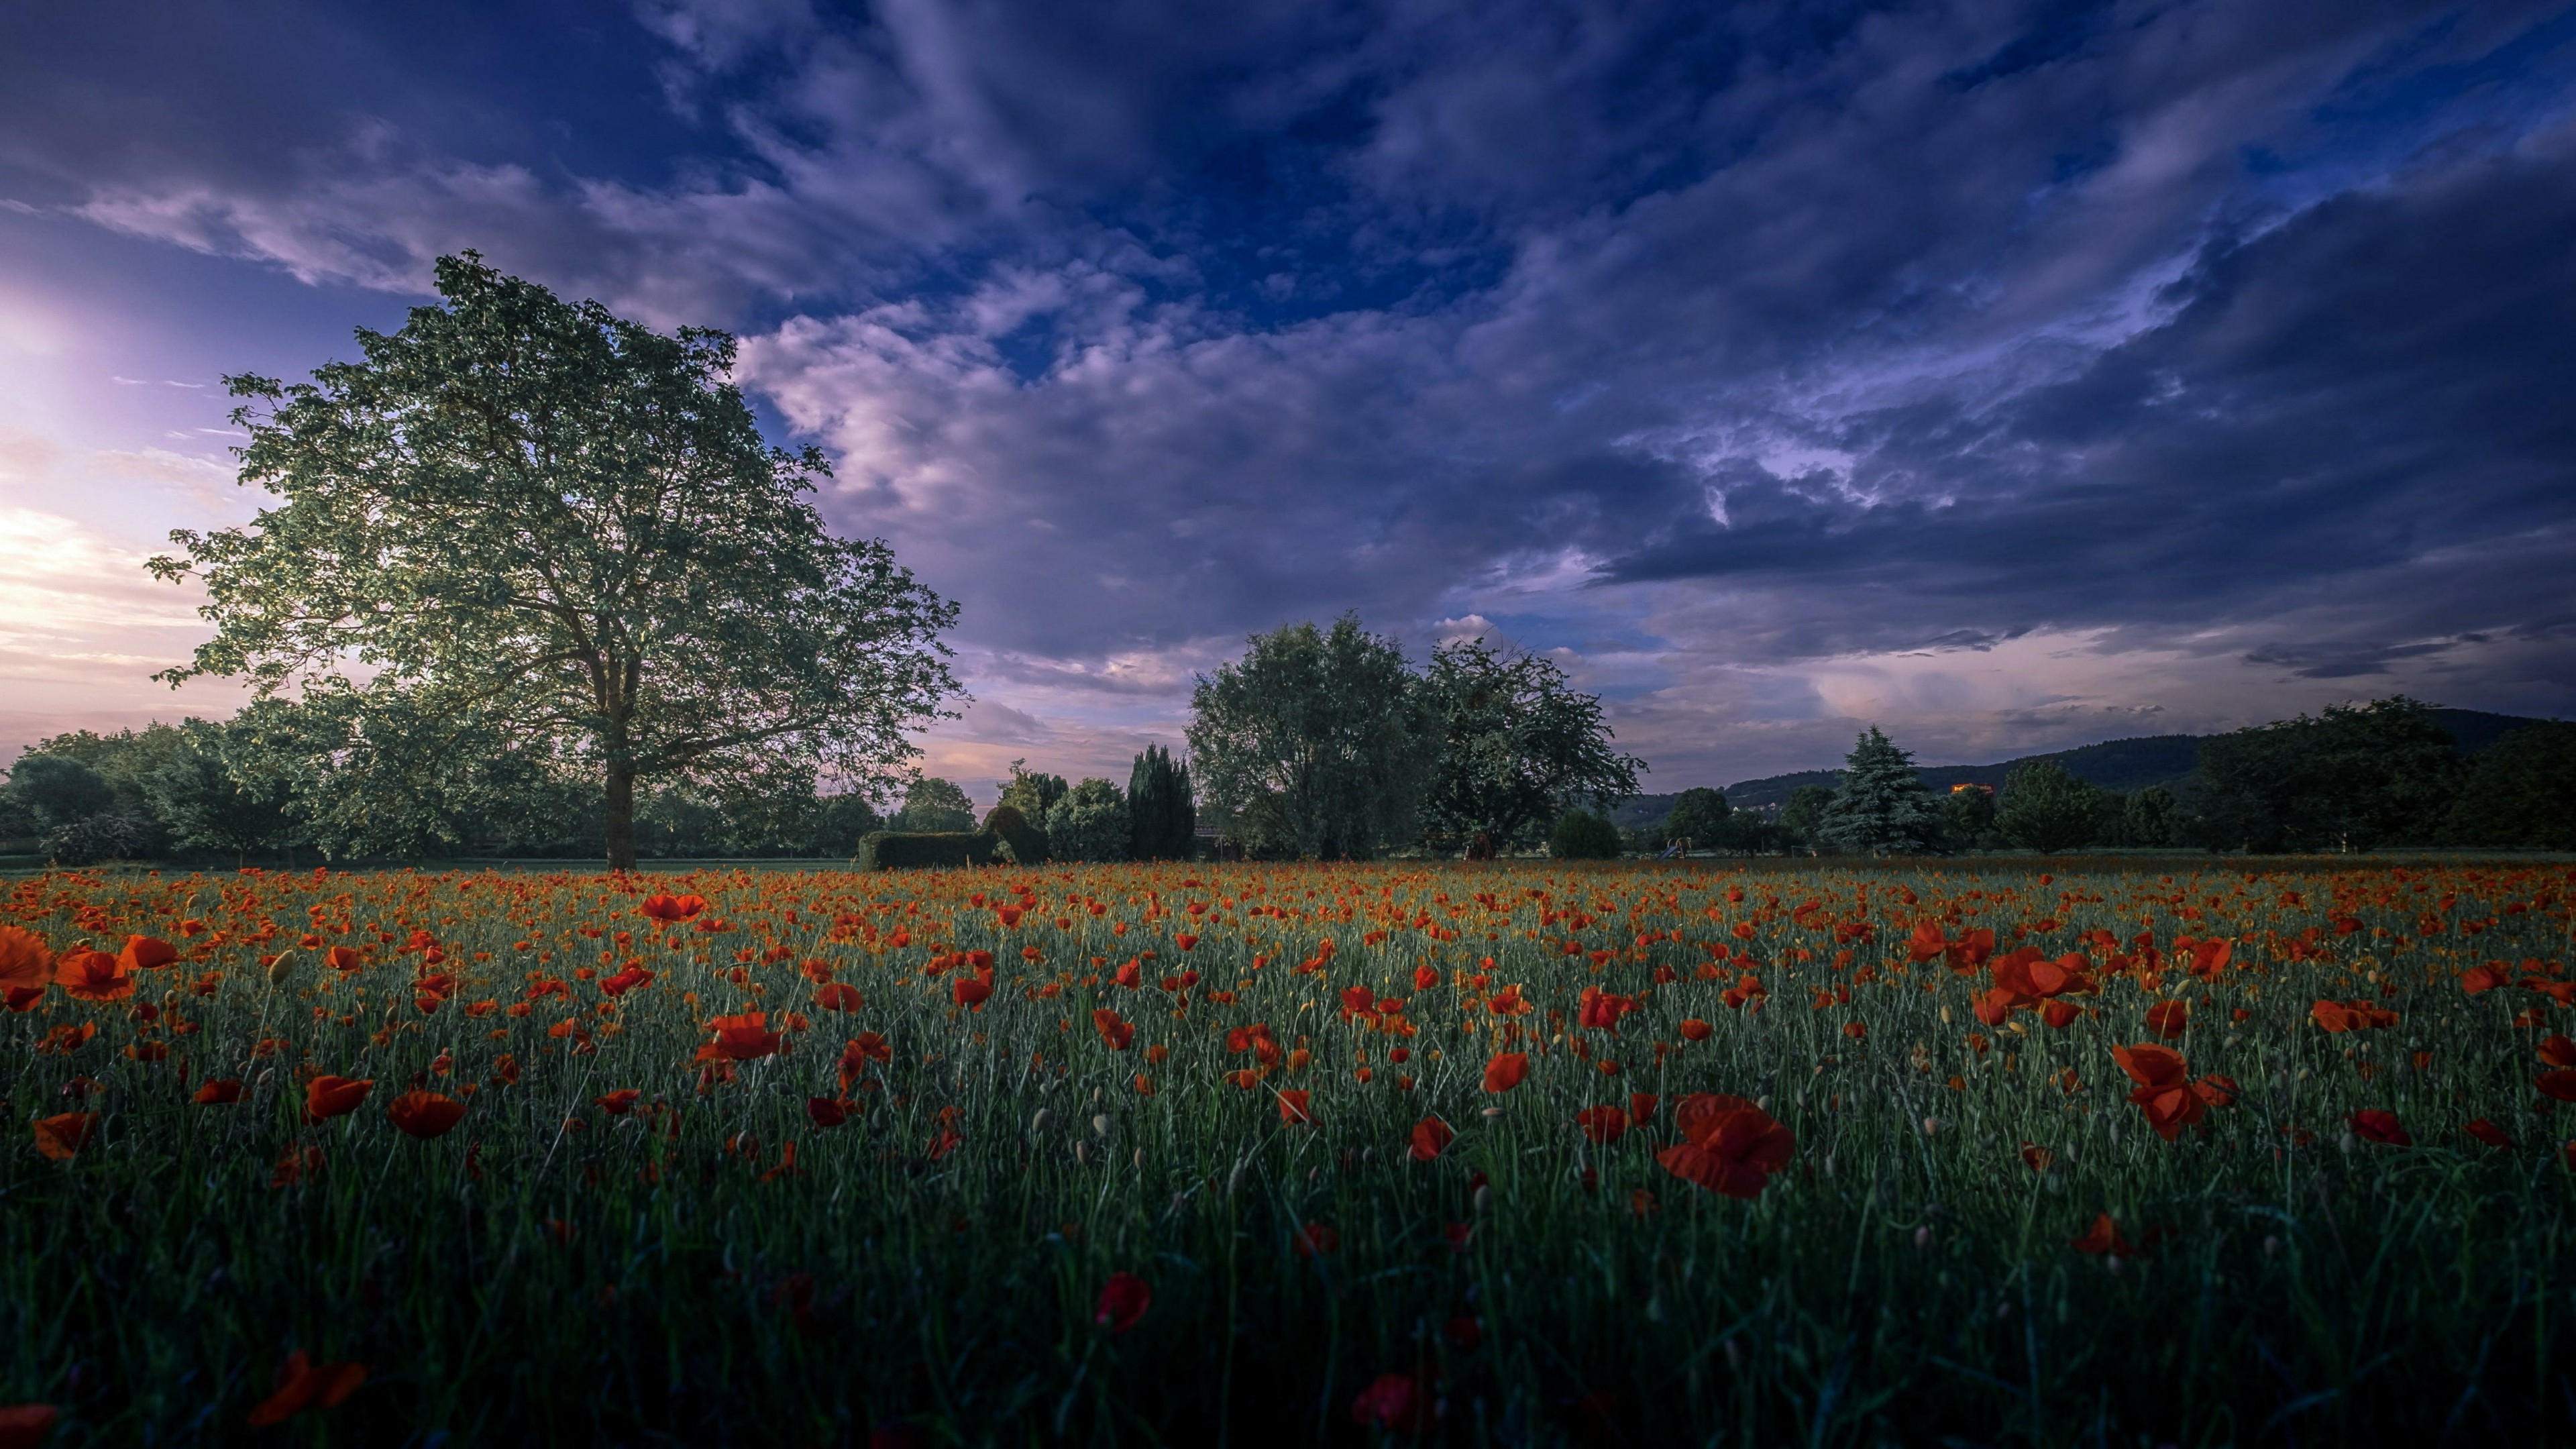 Poppy field at dusk - backiee